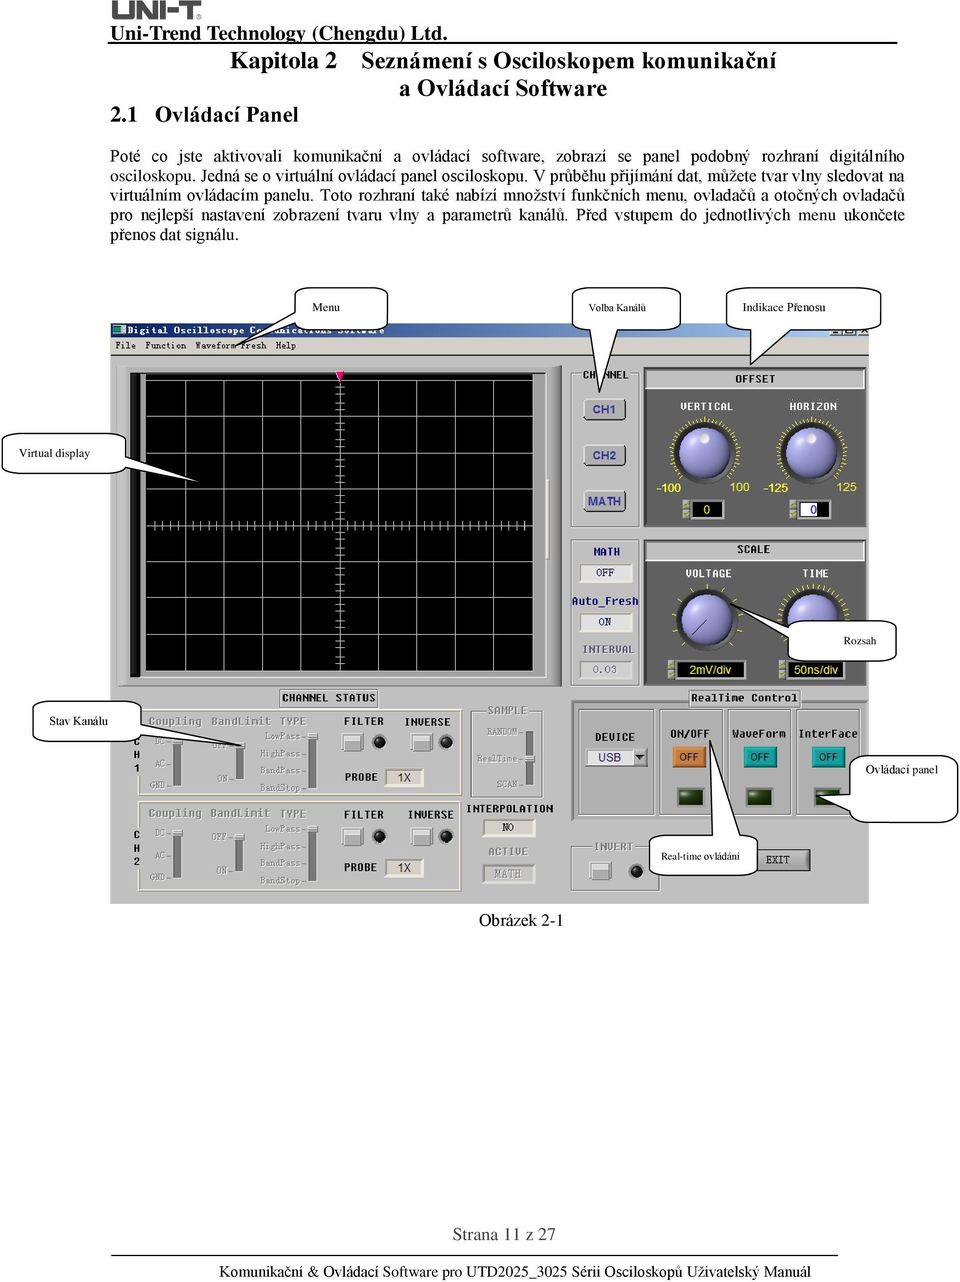 digitálního osciloskopu. Jedná se o virtuální ovládací panel osciloskopu. V průběhu přijímání dat, můžete tvar vlny sledovat na virtuálním ovládacím panelu.